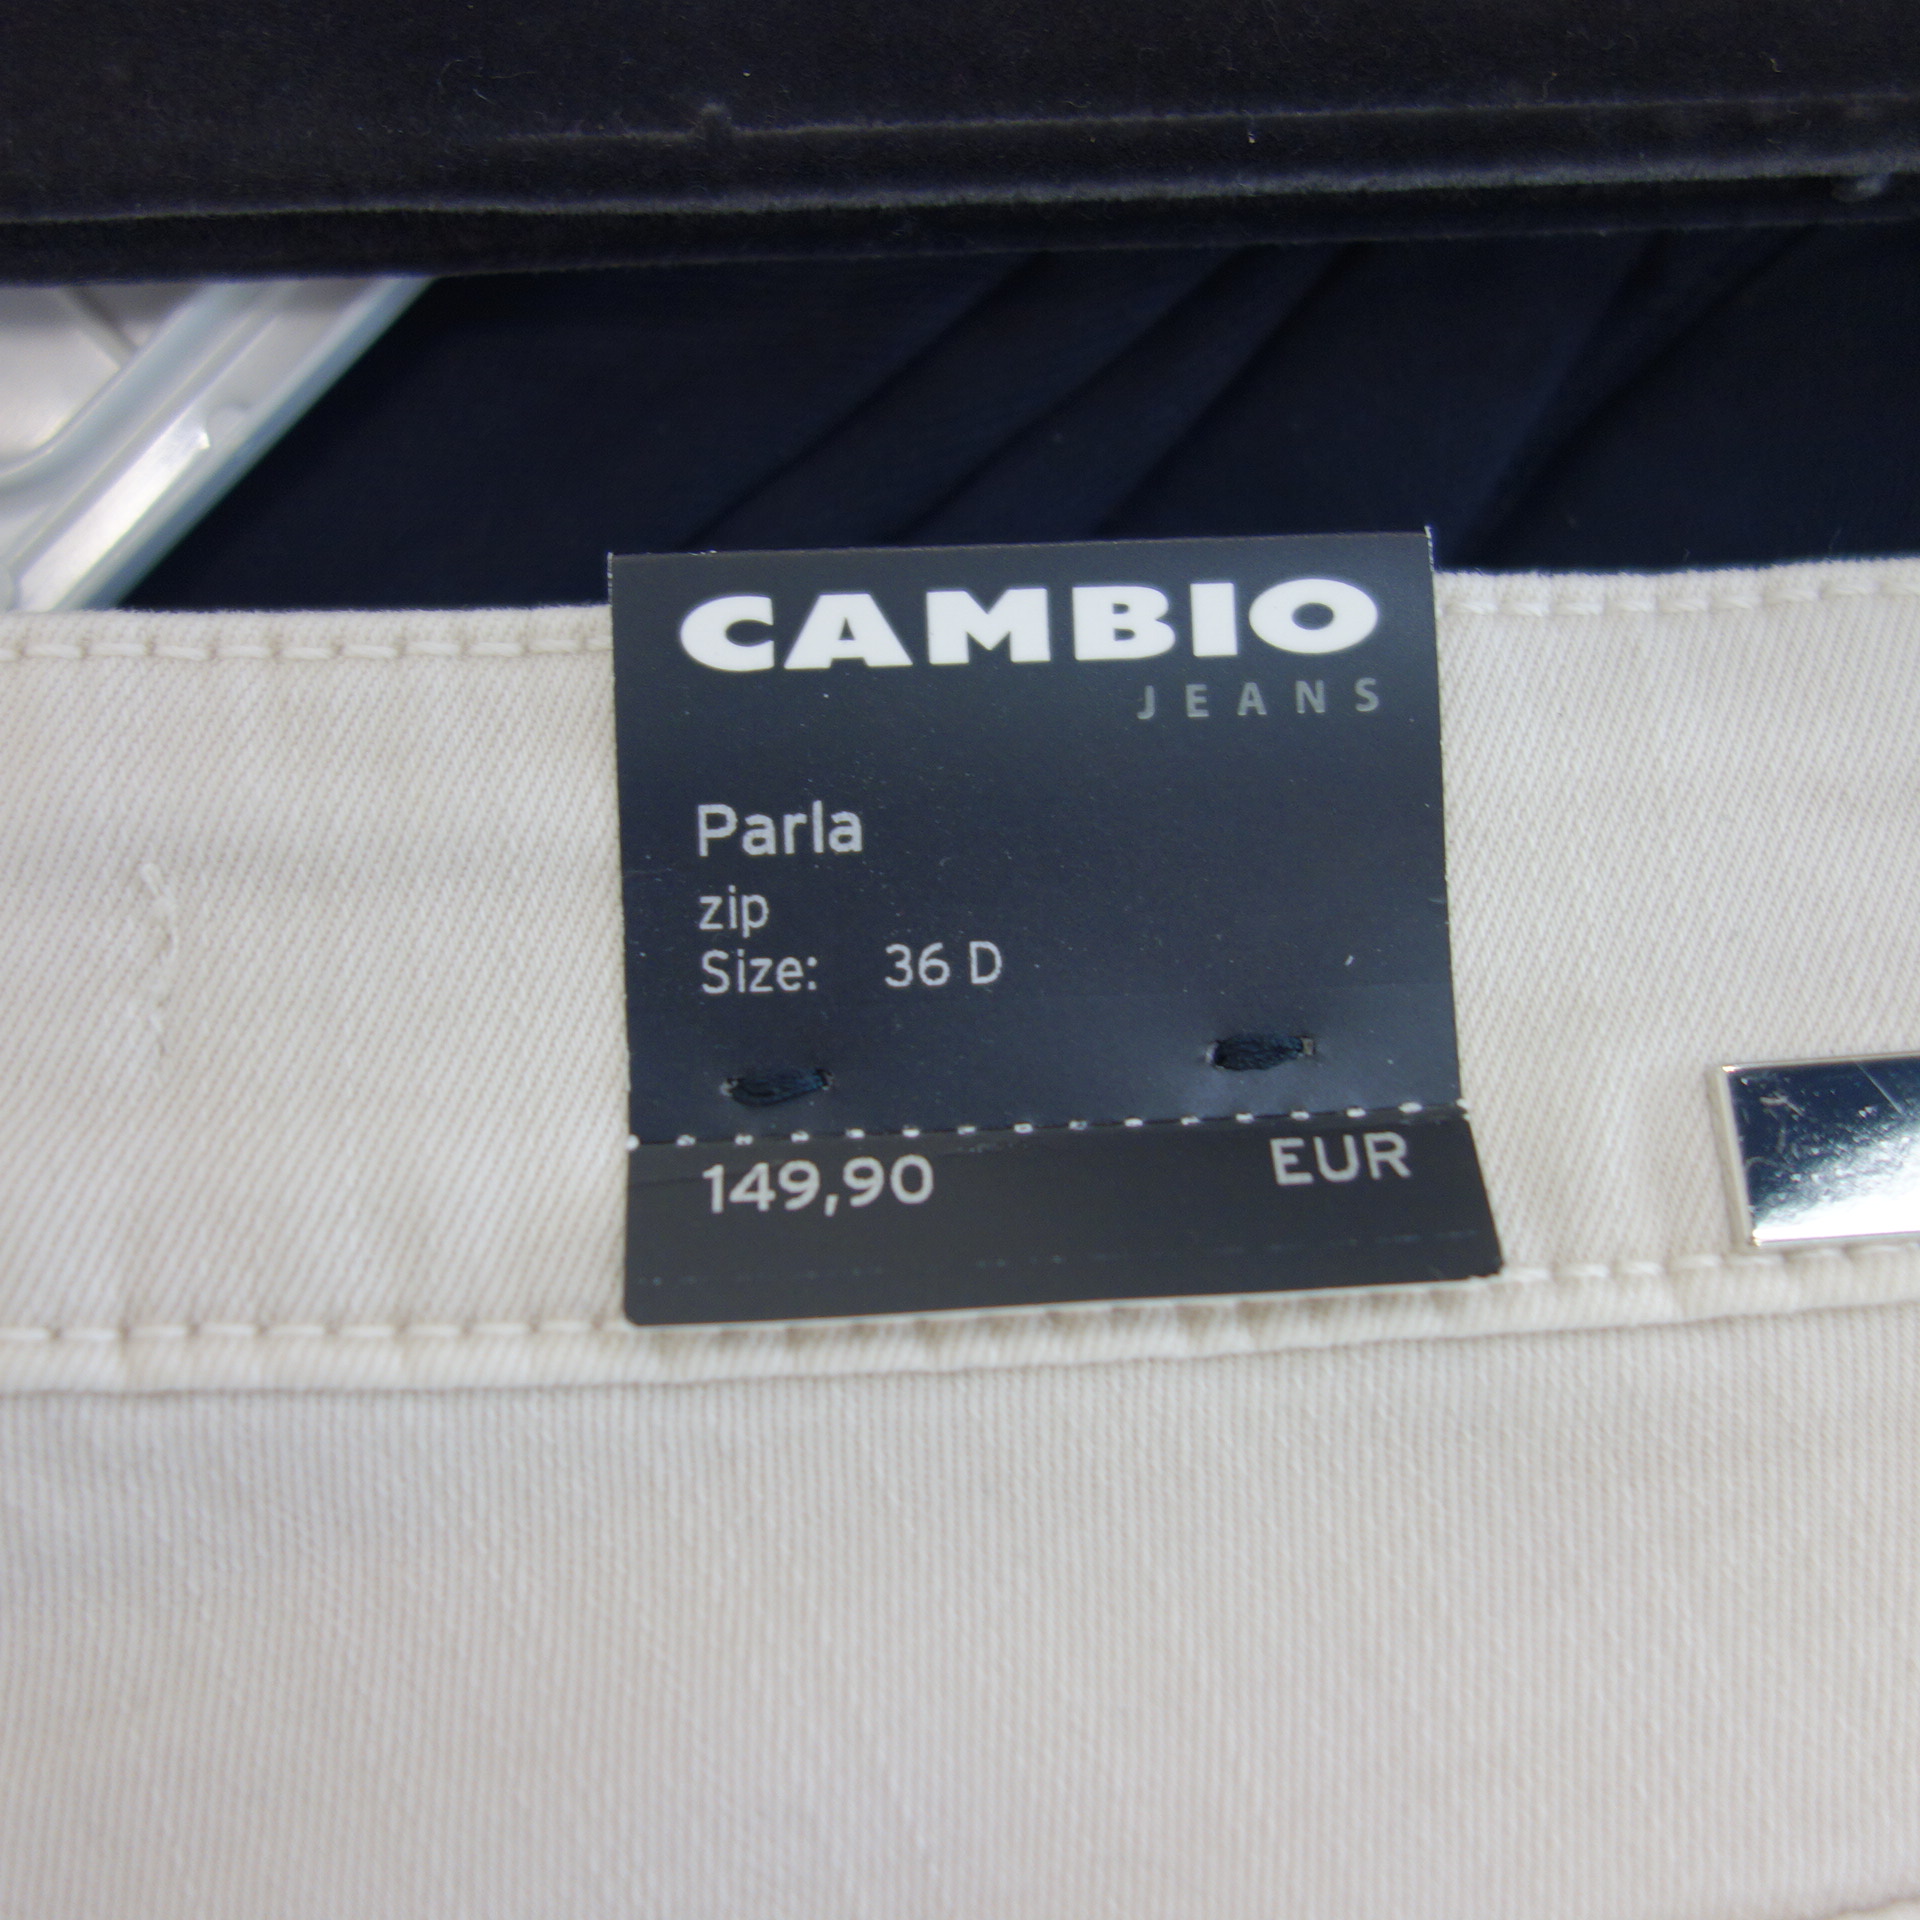 CAMBIO Jeans Hose Damen Modell PARLA Zip Beige Skinny 